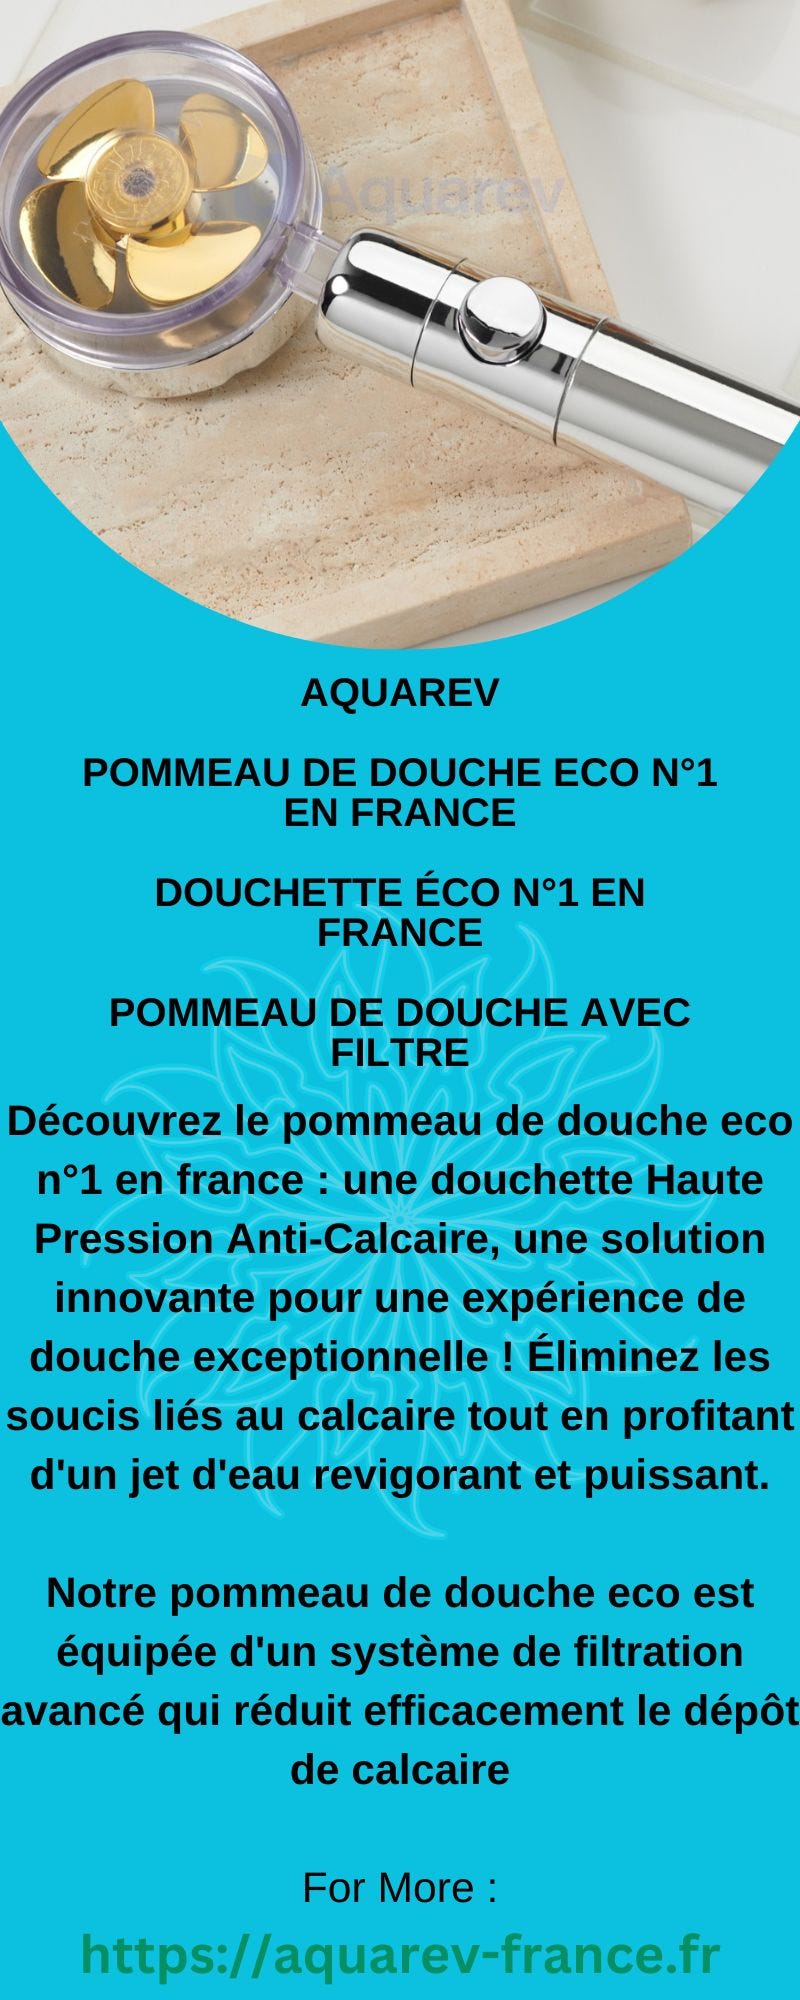 Pommeau de douche eco n°1 en France - Aquarev - Medium